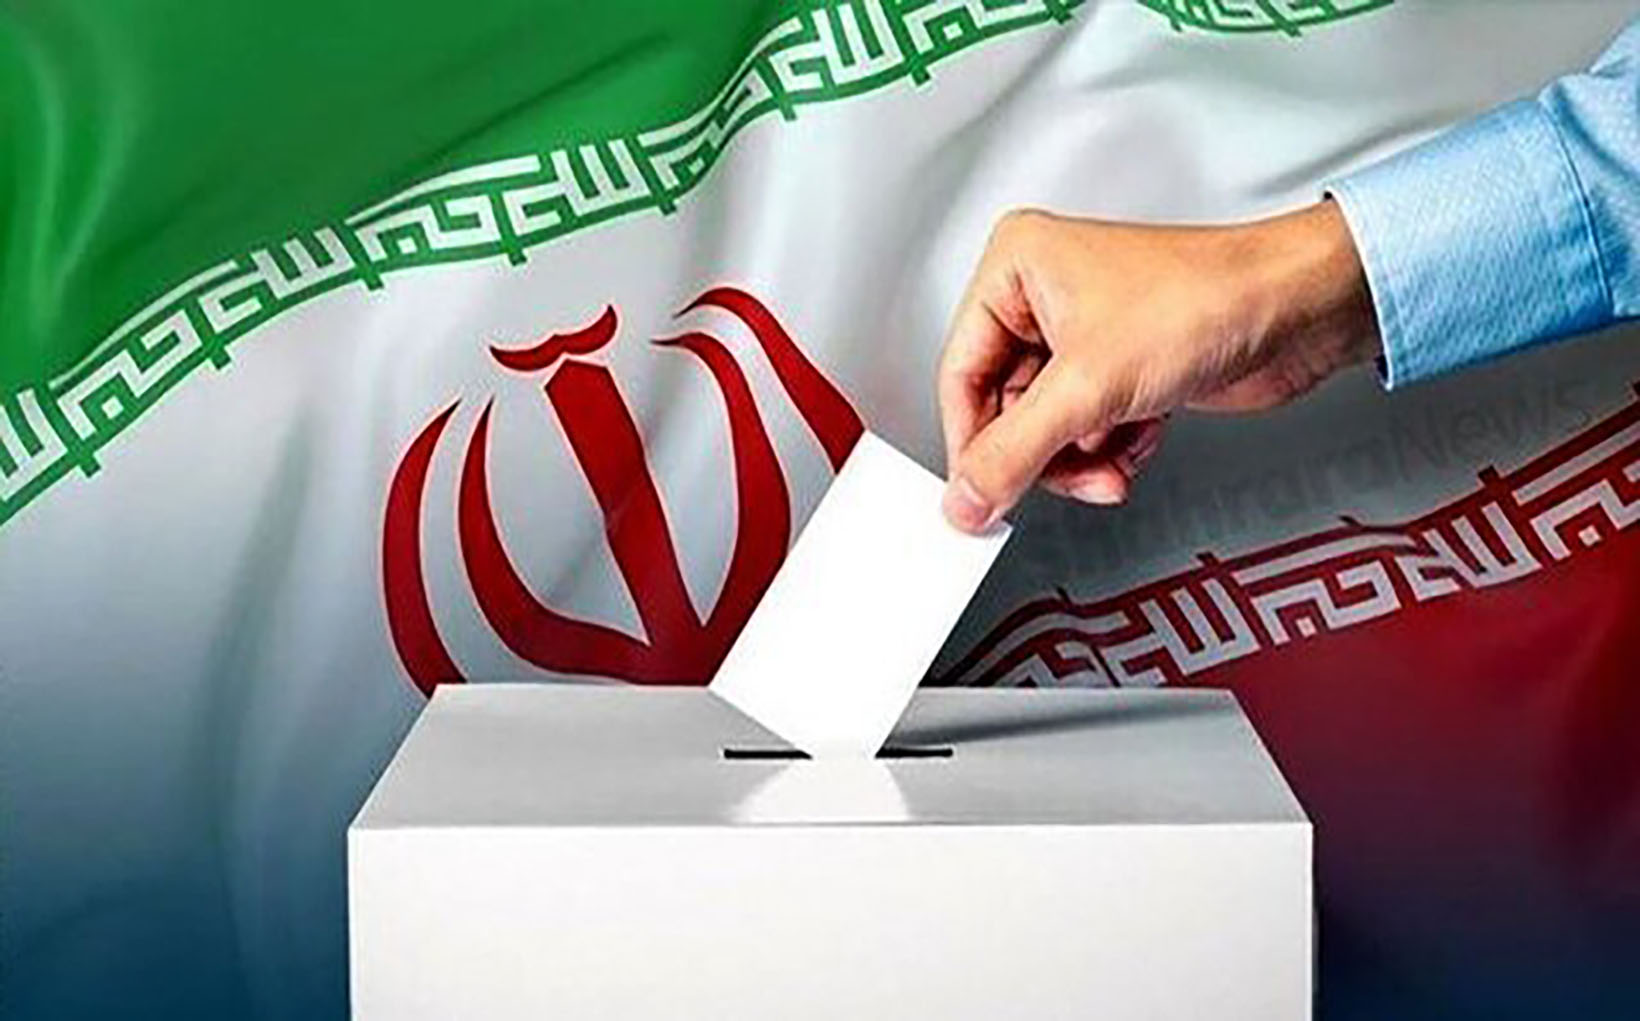  إيران تحدد موعد الانتخابات الرئاسية في 28 يونيو المقبل.